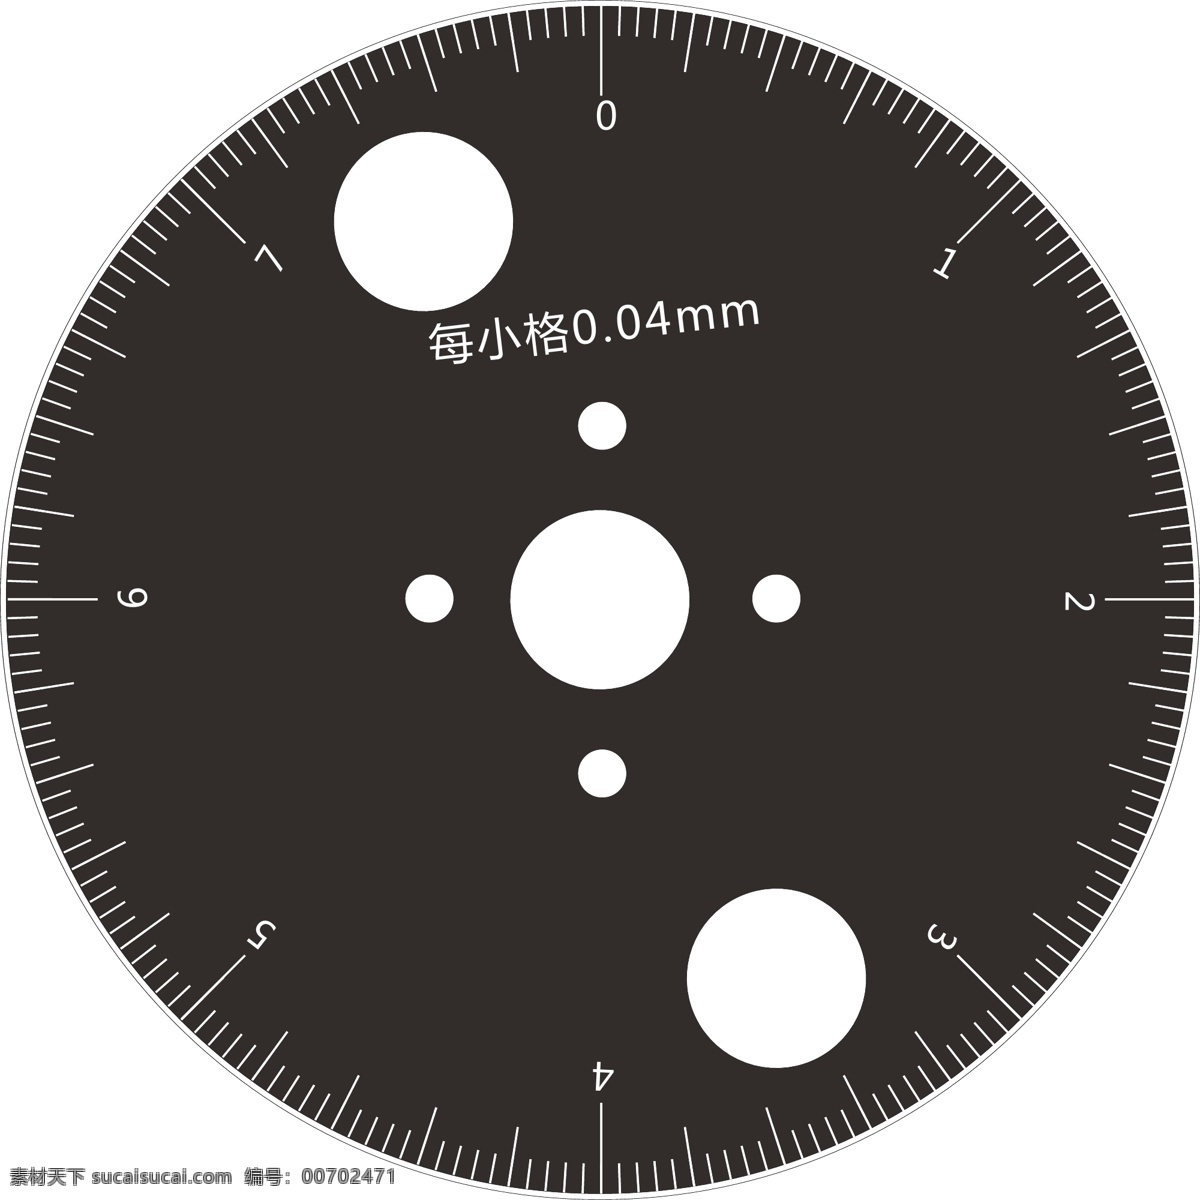 圆形 标尺 面板 对于 更 准确 度数 正确 位置 明确 黑色 正是 正 黑